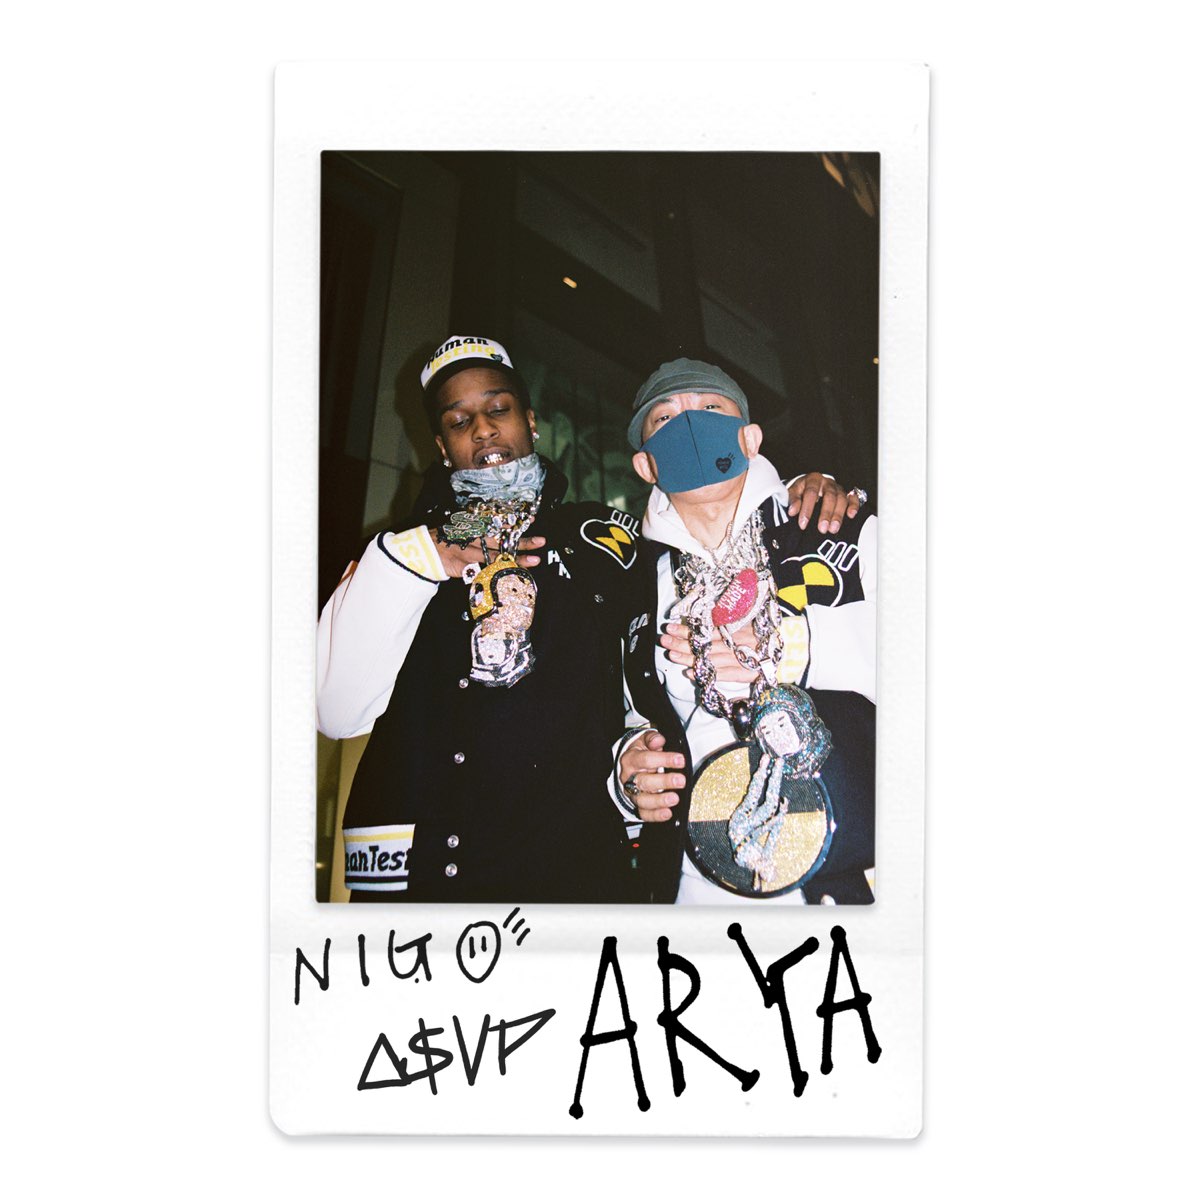 Nigo featuring A$AP Rocky — Arya cover artwork